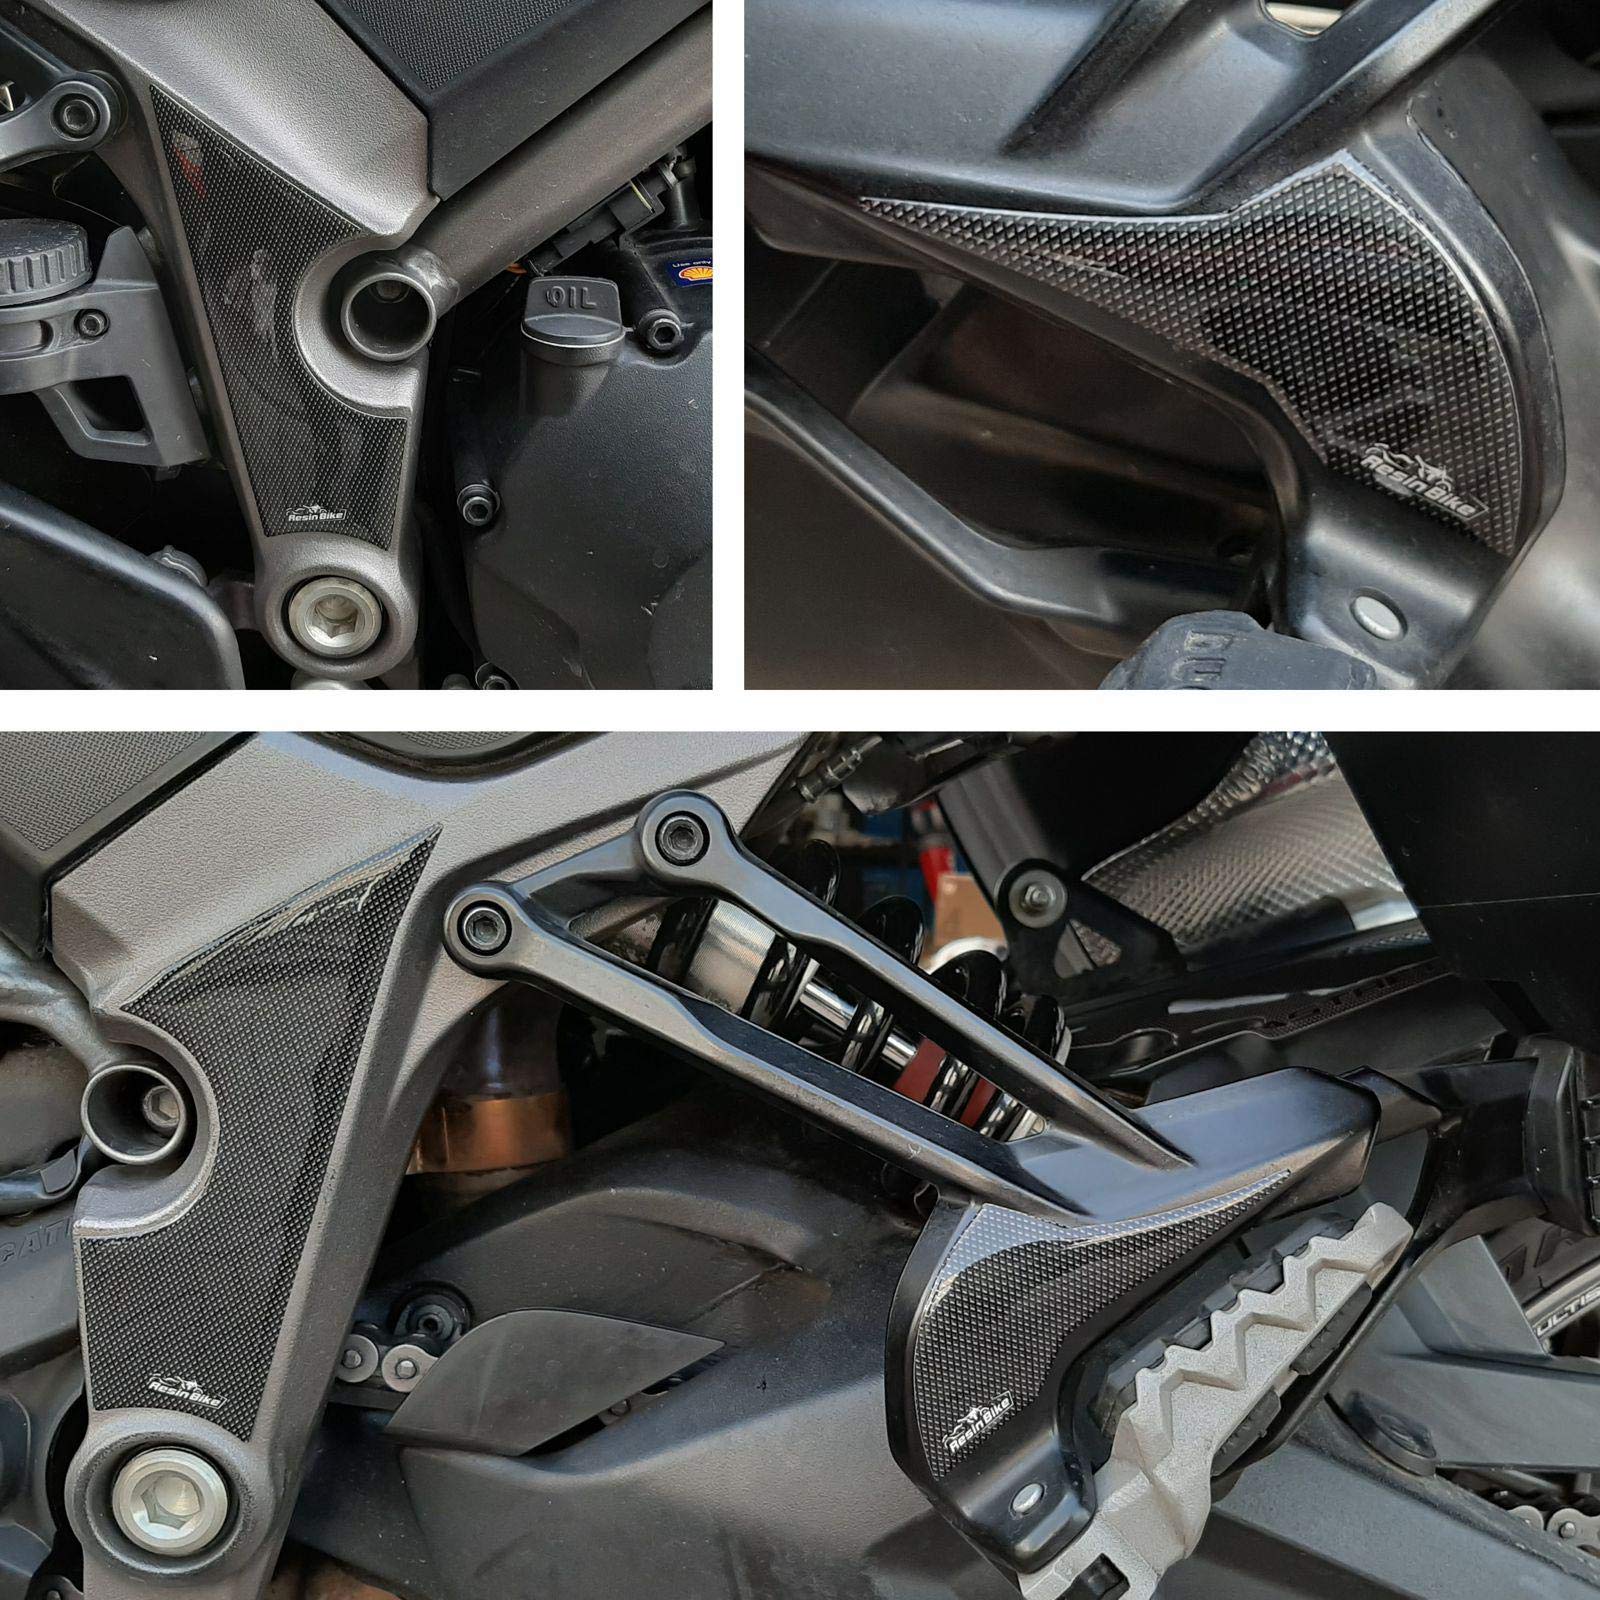 Resin Bike Aufkleber für Motorrad Kompatibel mit Ducati Multistrada 950 2018 2020. Einstiegsleistenschutz vor Stößen und Kratzern. 3D-Harzklebstoff - Stickers - Made in Italy von Resin Bike